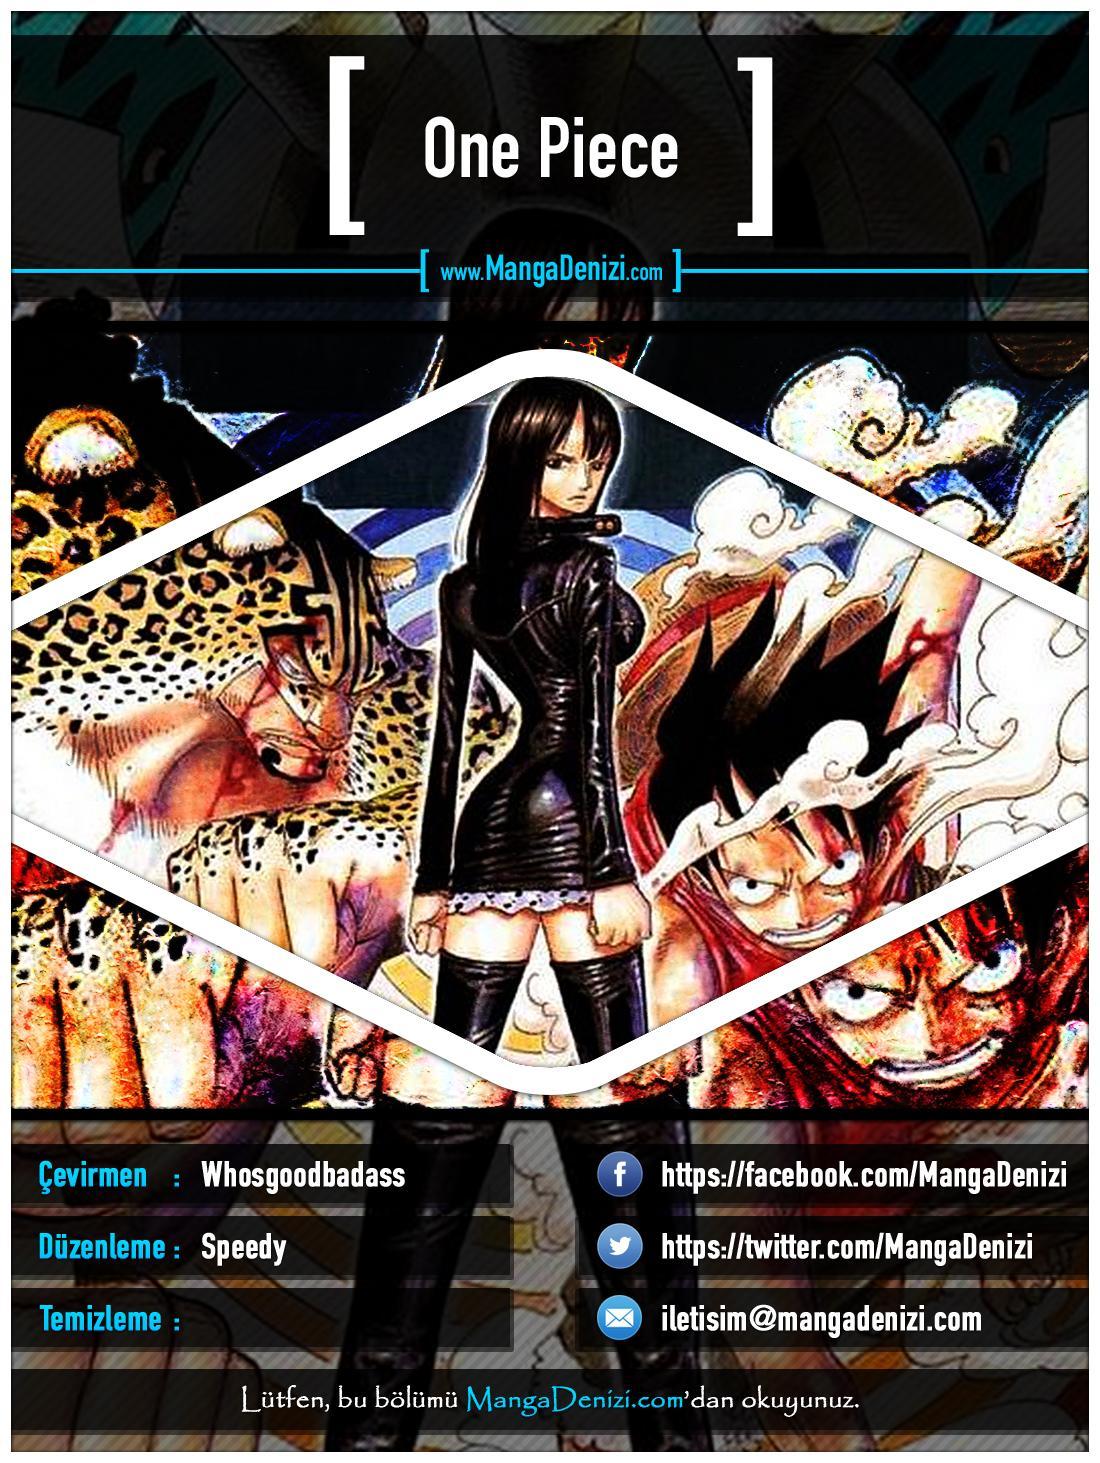 One Piece [Renkli] mangasının 0356 bölümünün 1. sayfasını okuyorsunuz.